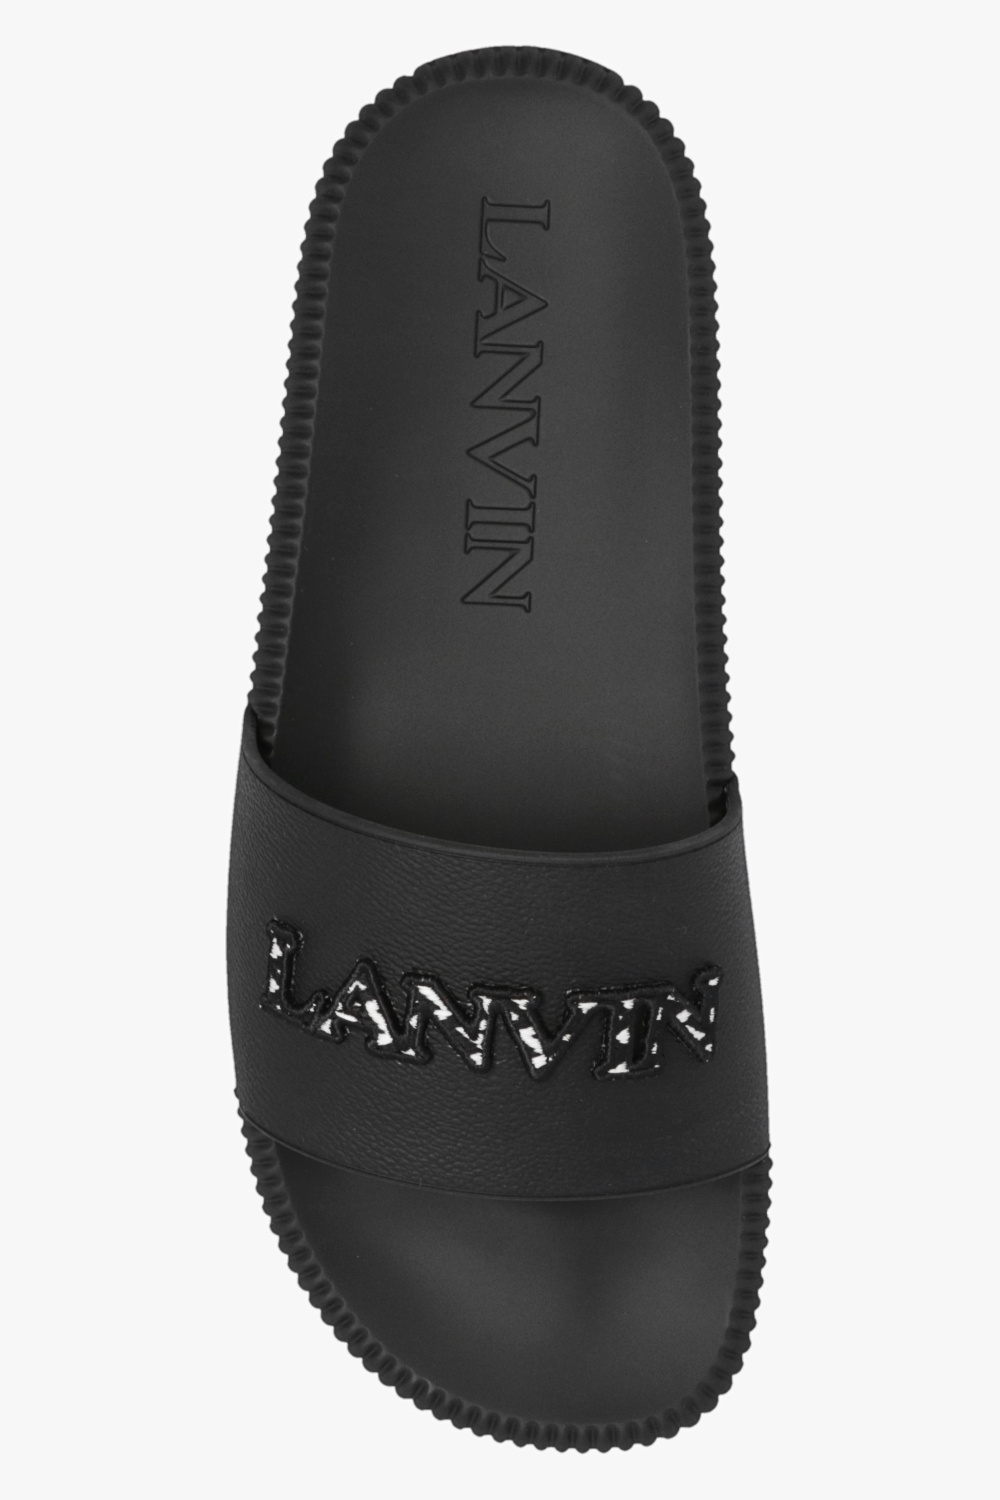 Lanvin zapatillas de running Puma entrenamiento talla 40.5 baratas menos de 60€ mejor valoradas